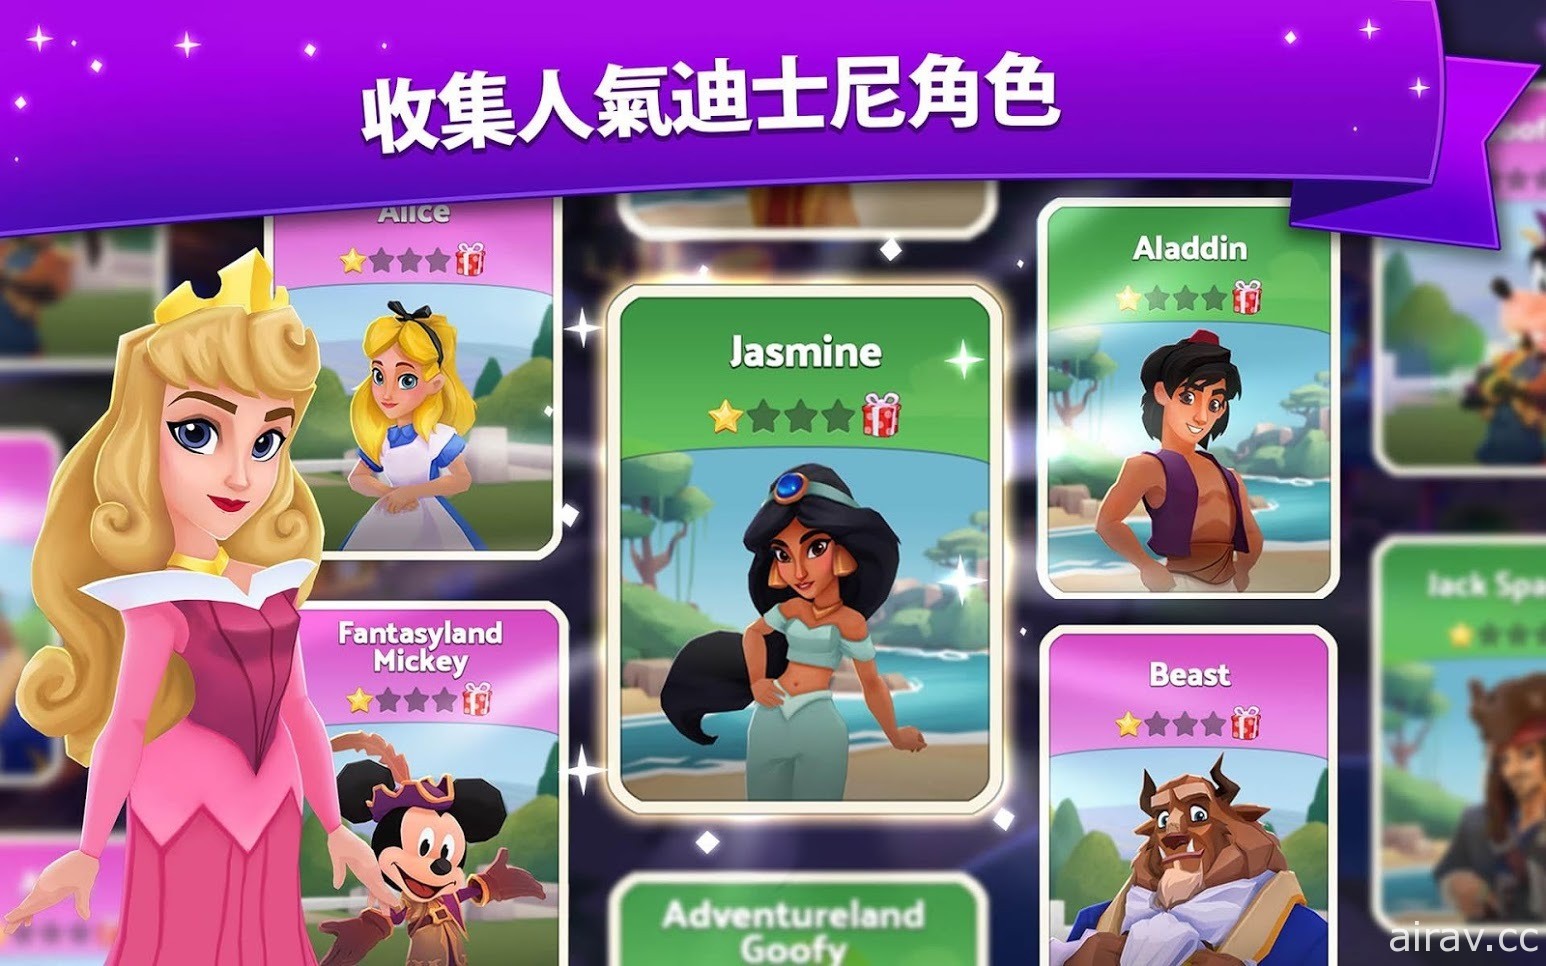 《迪士尼奇妙世界》於 Google Play 商店開放預先註冊 親手打造專屬迪士尼樂園